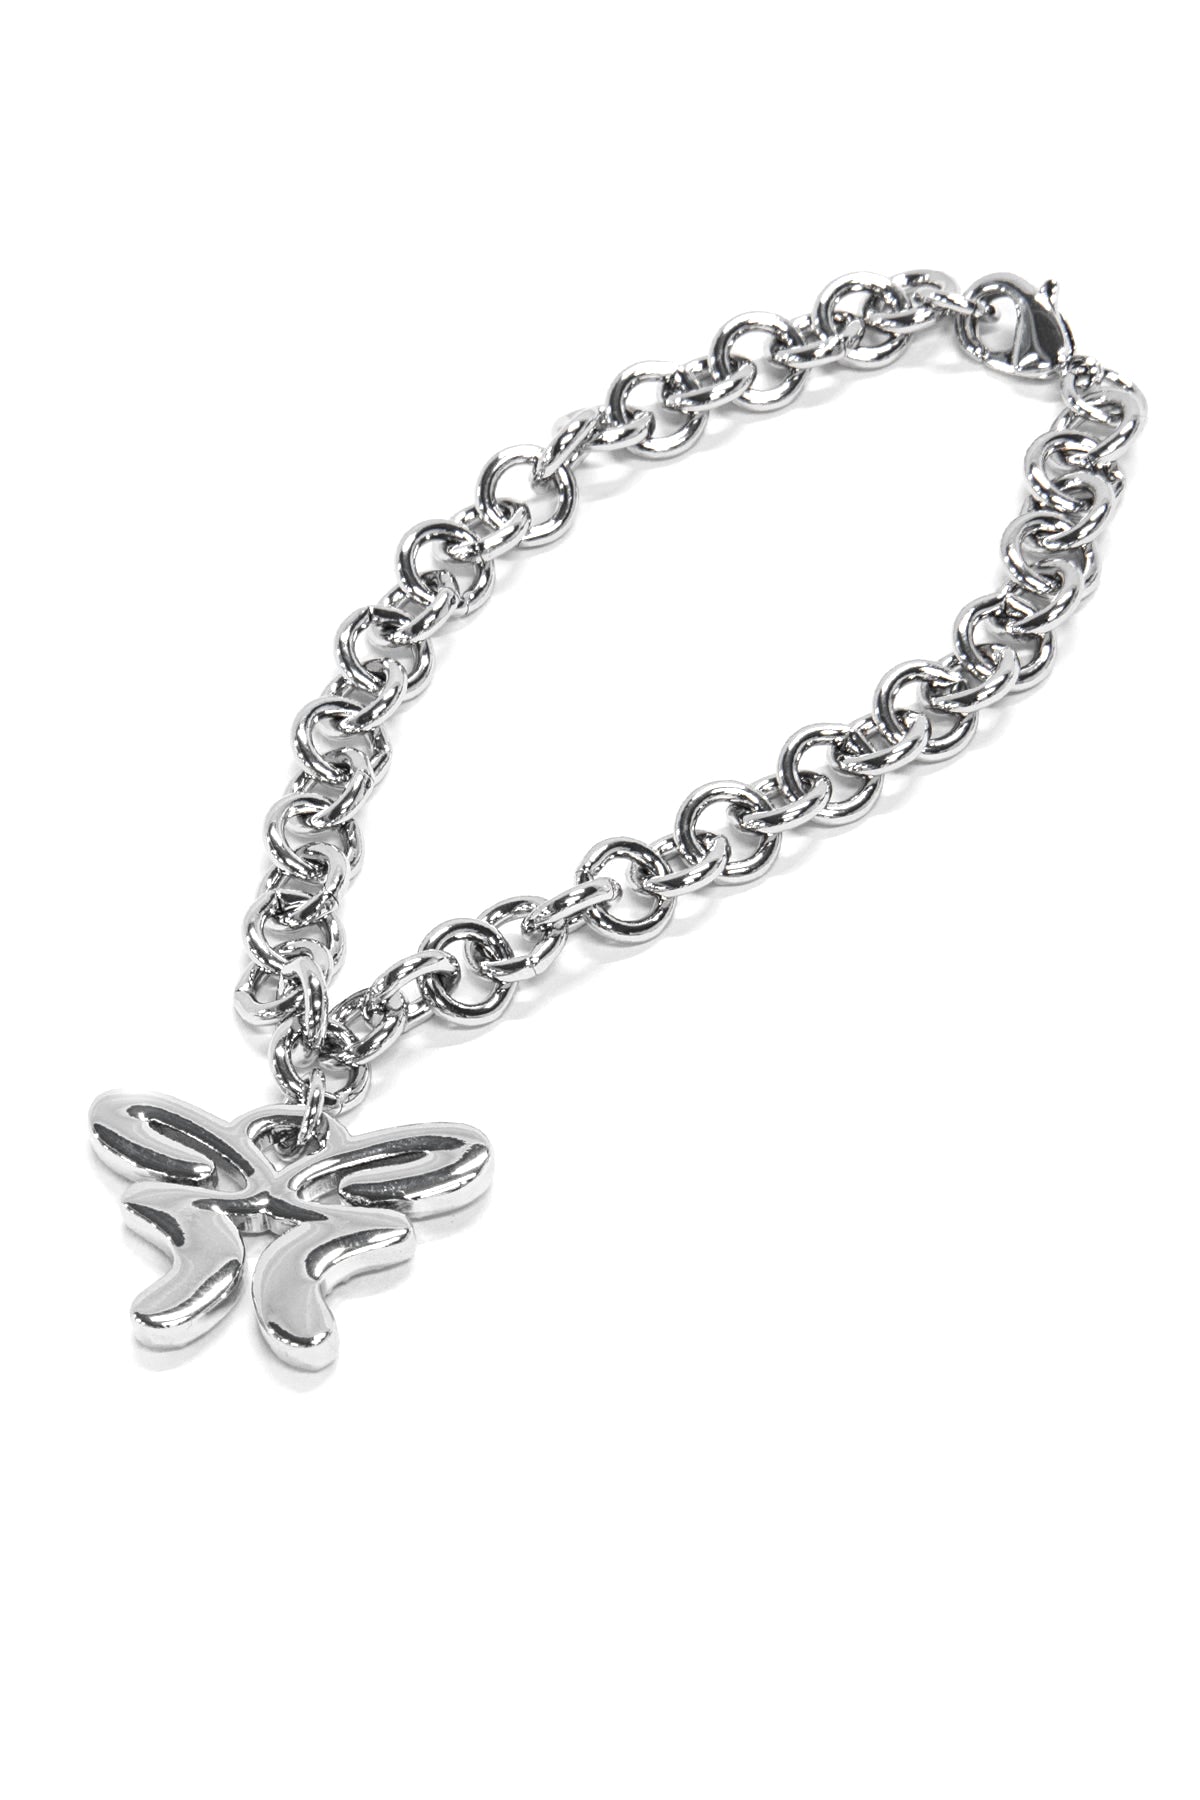 Butterfly Bracelet Silver & Rhinestones